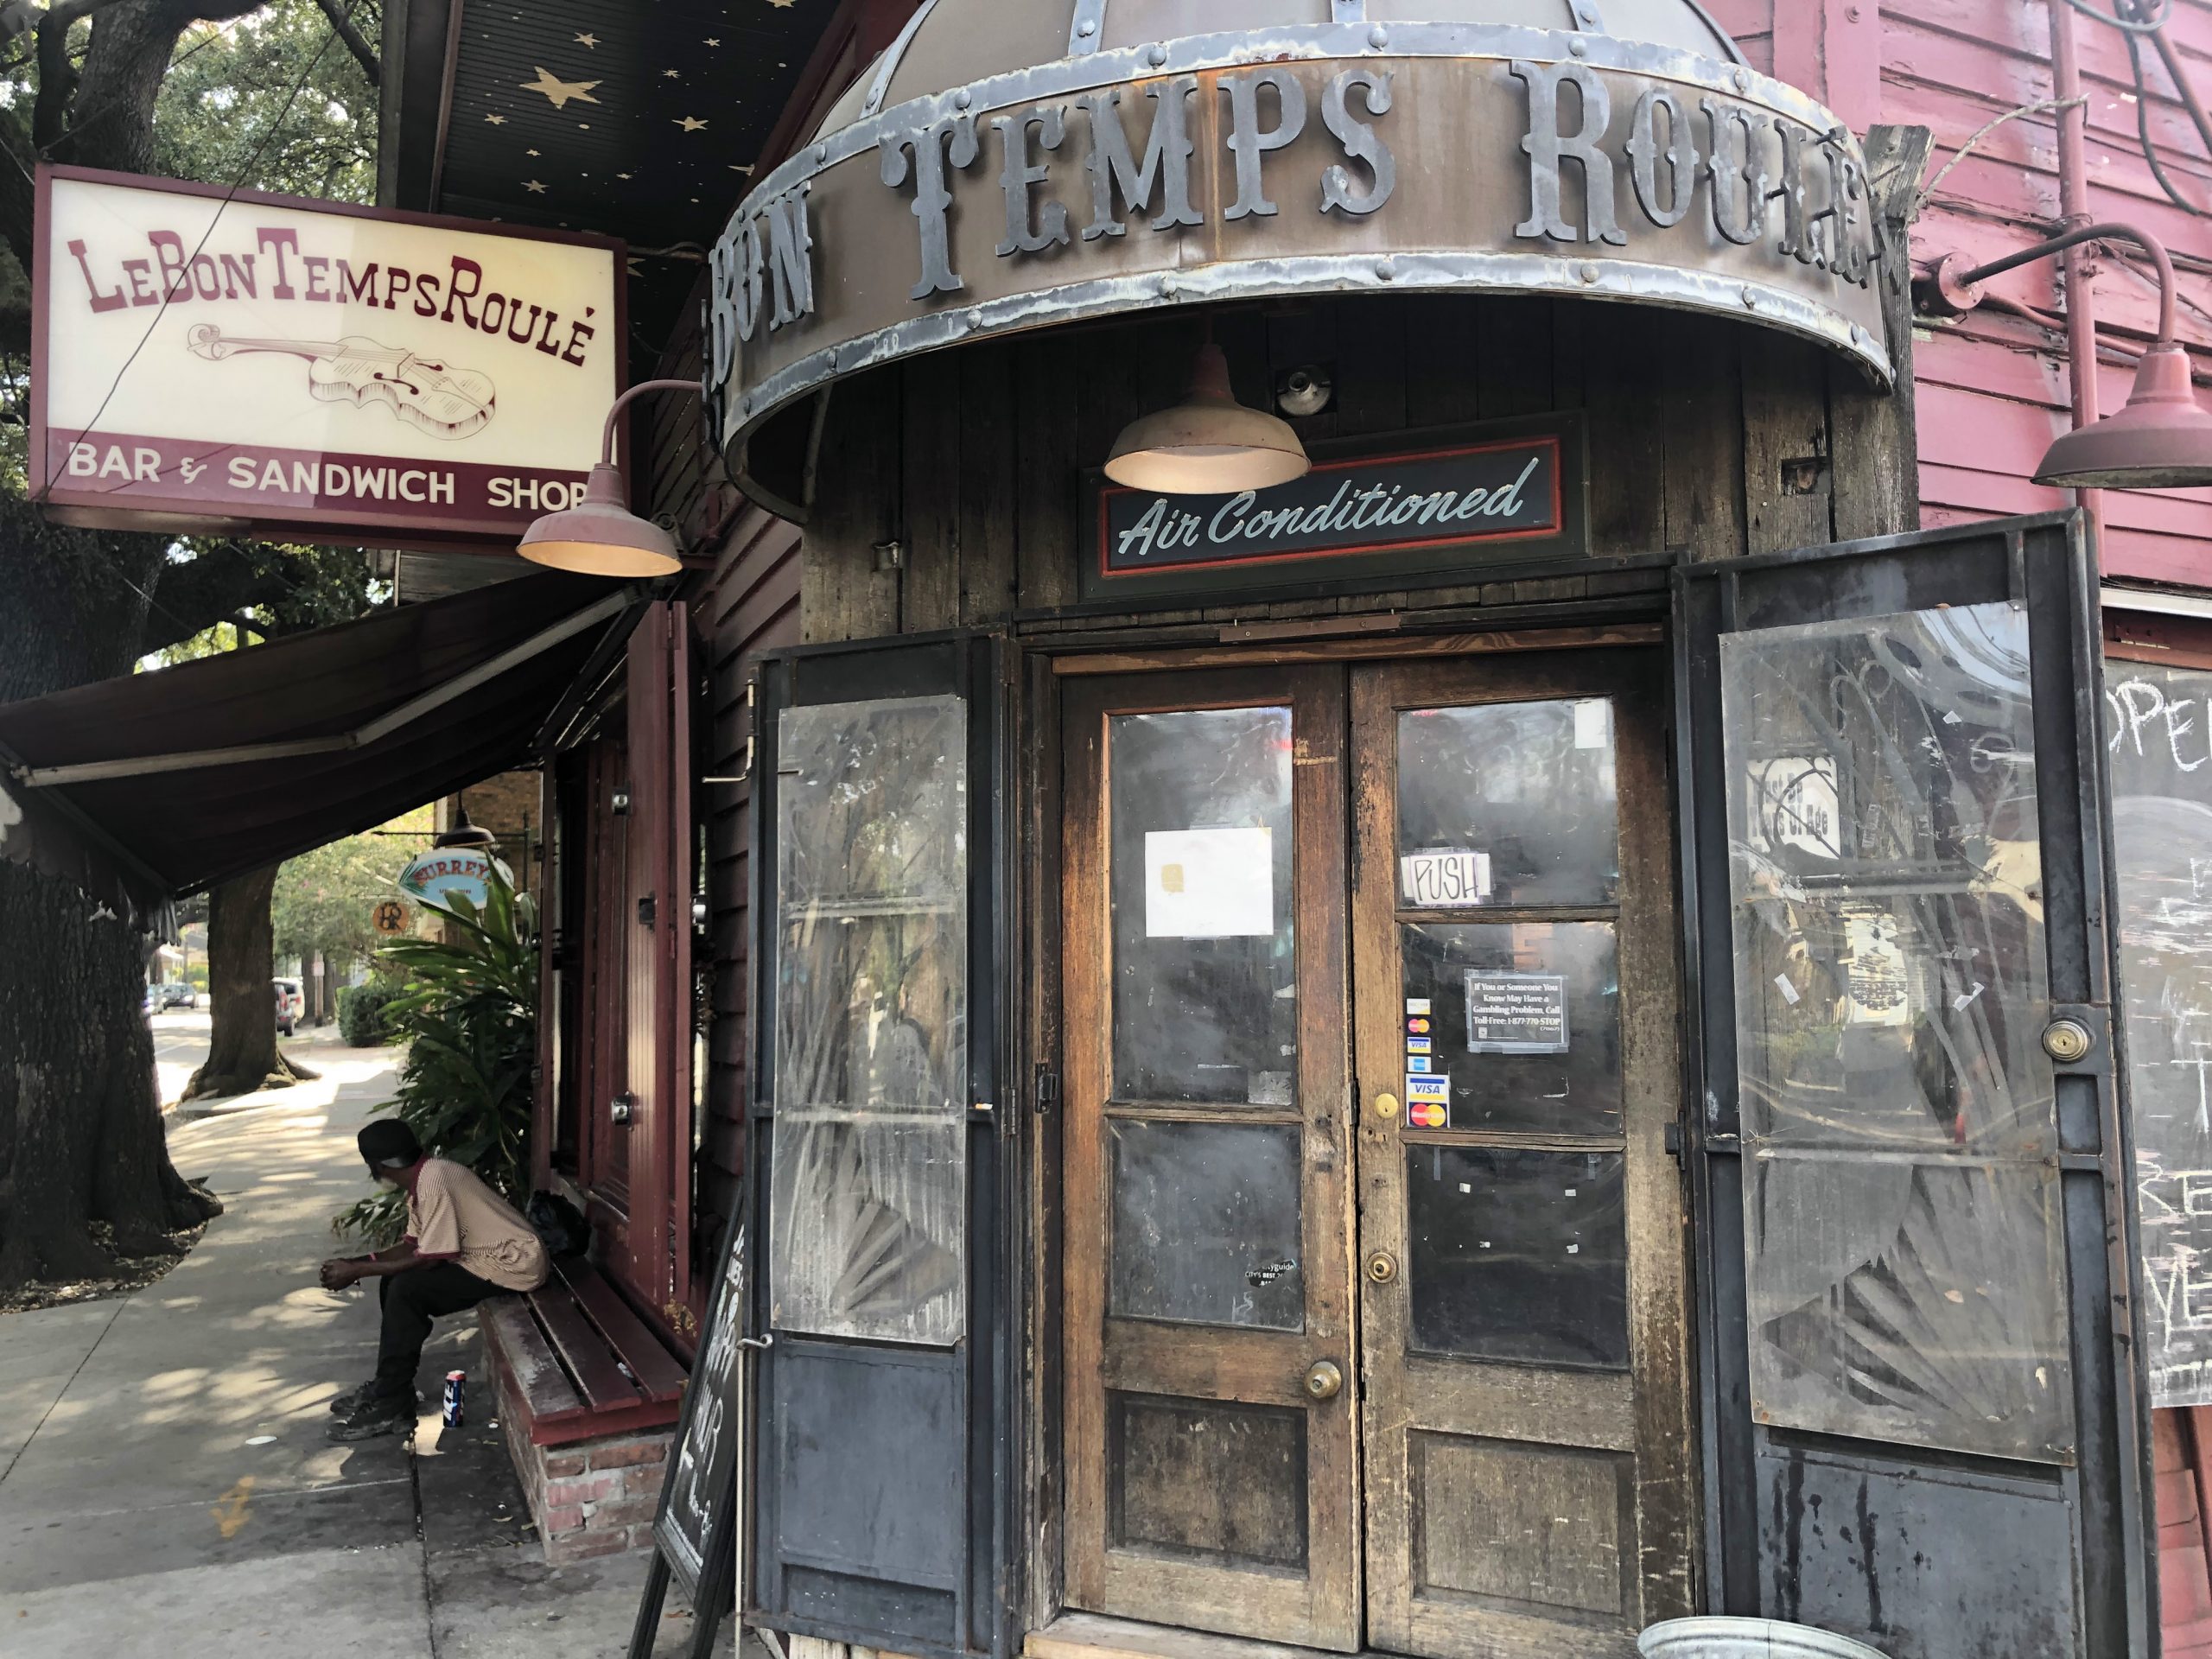 Le Bon Temps Roule - New Orleans Dive Bar - Front Door